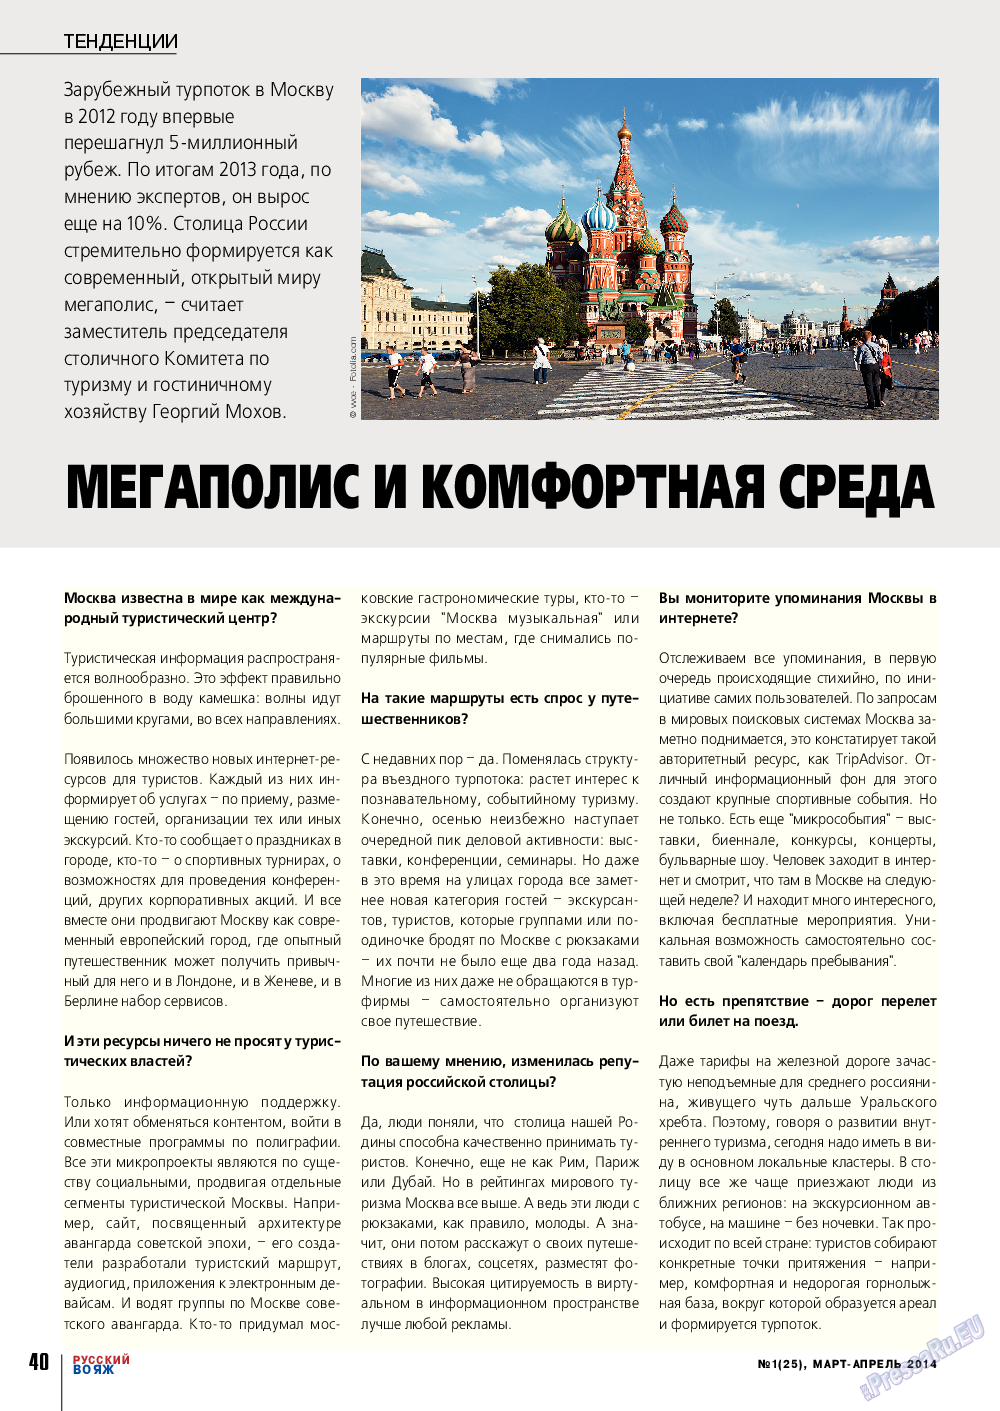 Русский вояж, журнал. 2014 №1 стр.40